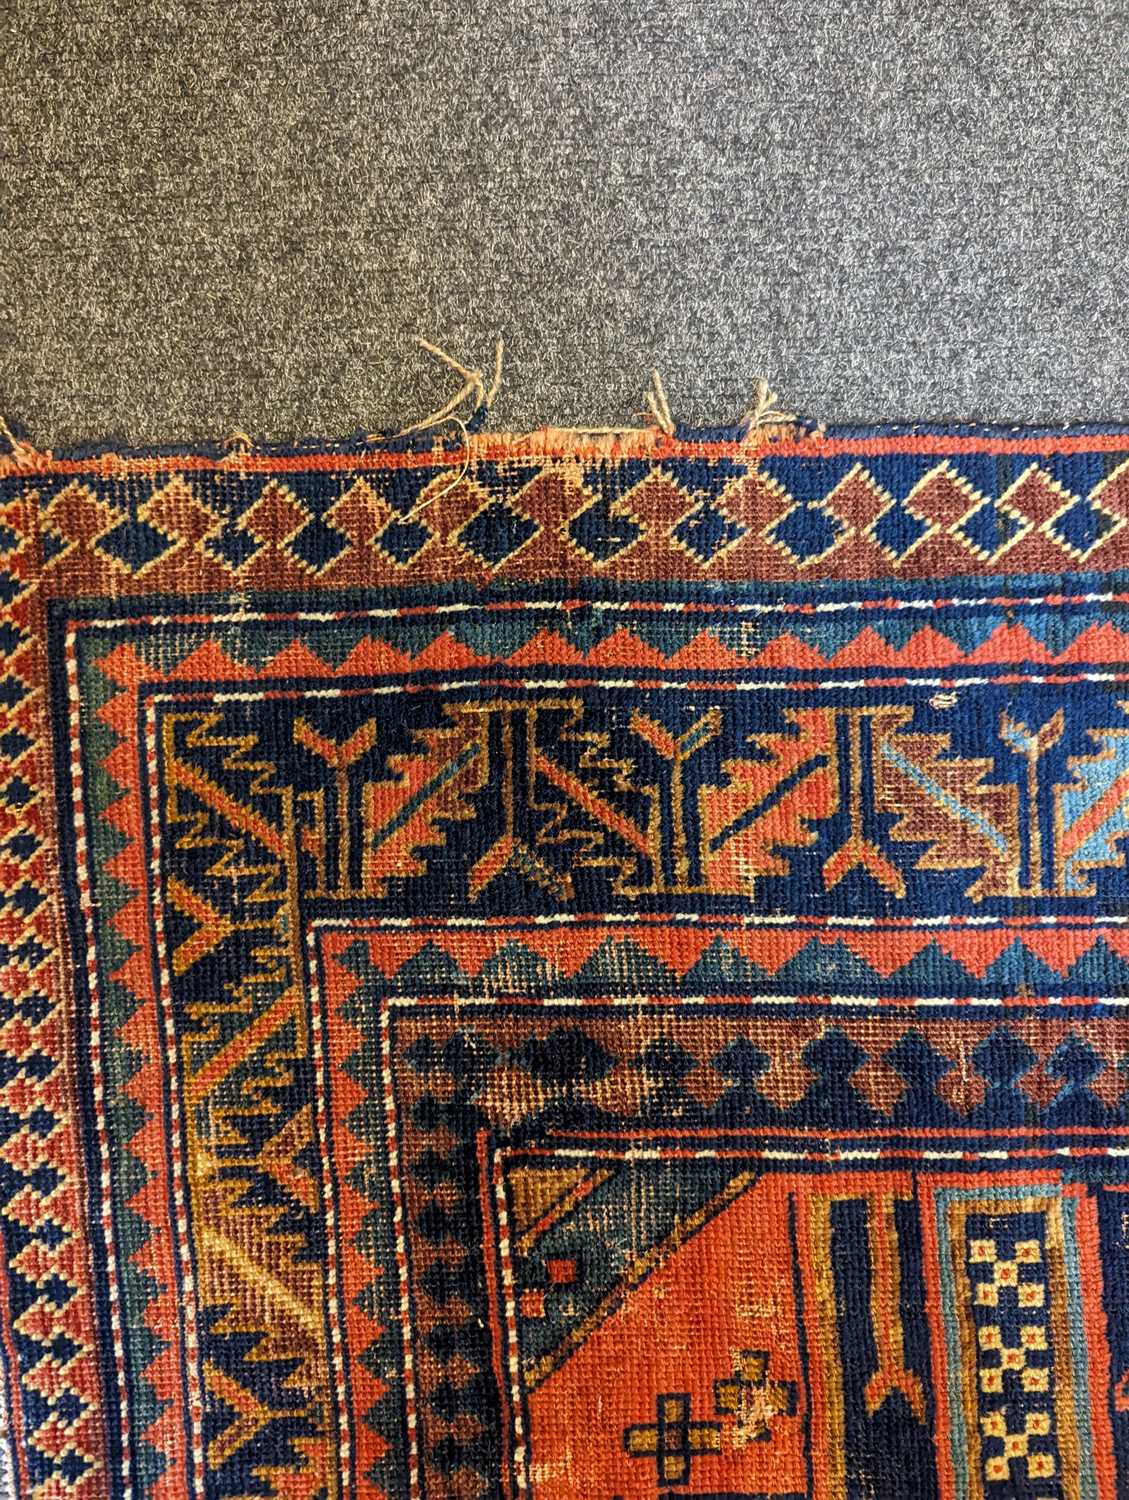 A Kazak wool rug - Image 39 of 49